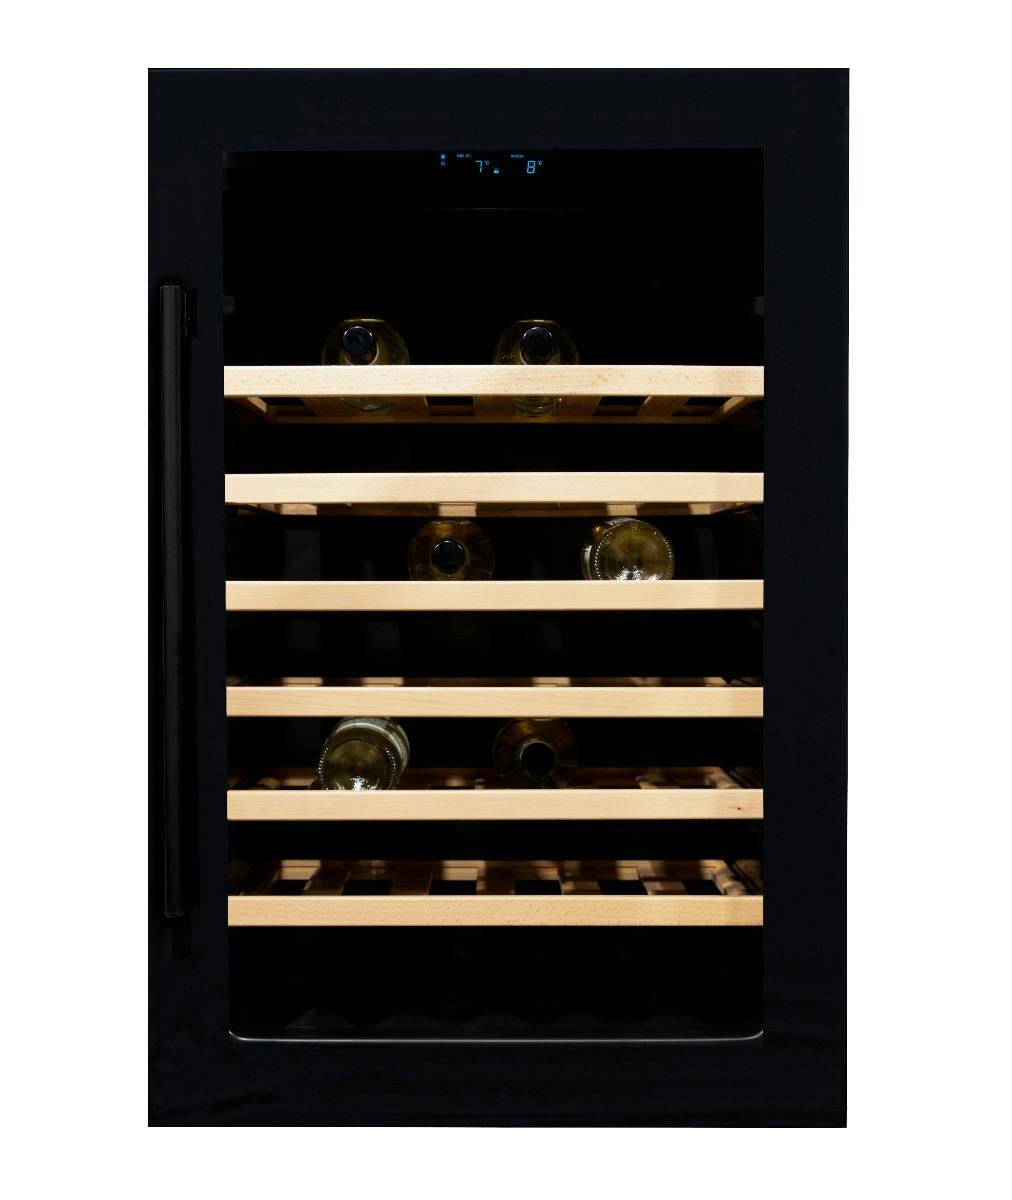 Sinis Wennen aan baan Vinata Premium Wijnklimaatkast Inbouw koelkast - Zwart - Wijnkoelkast 48  flessen - 88.5 x 59x 55.8 cm - Wijnkast glazen deur | MAKRO Webshop